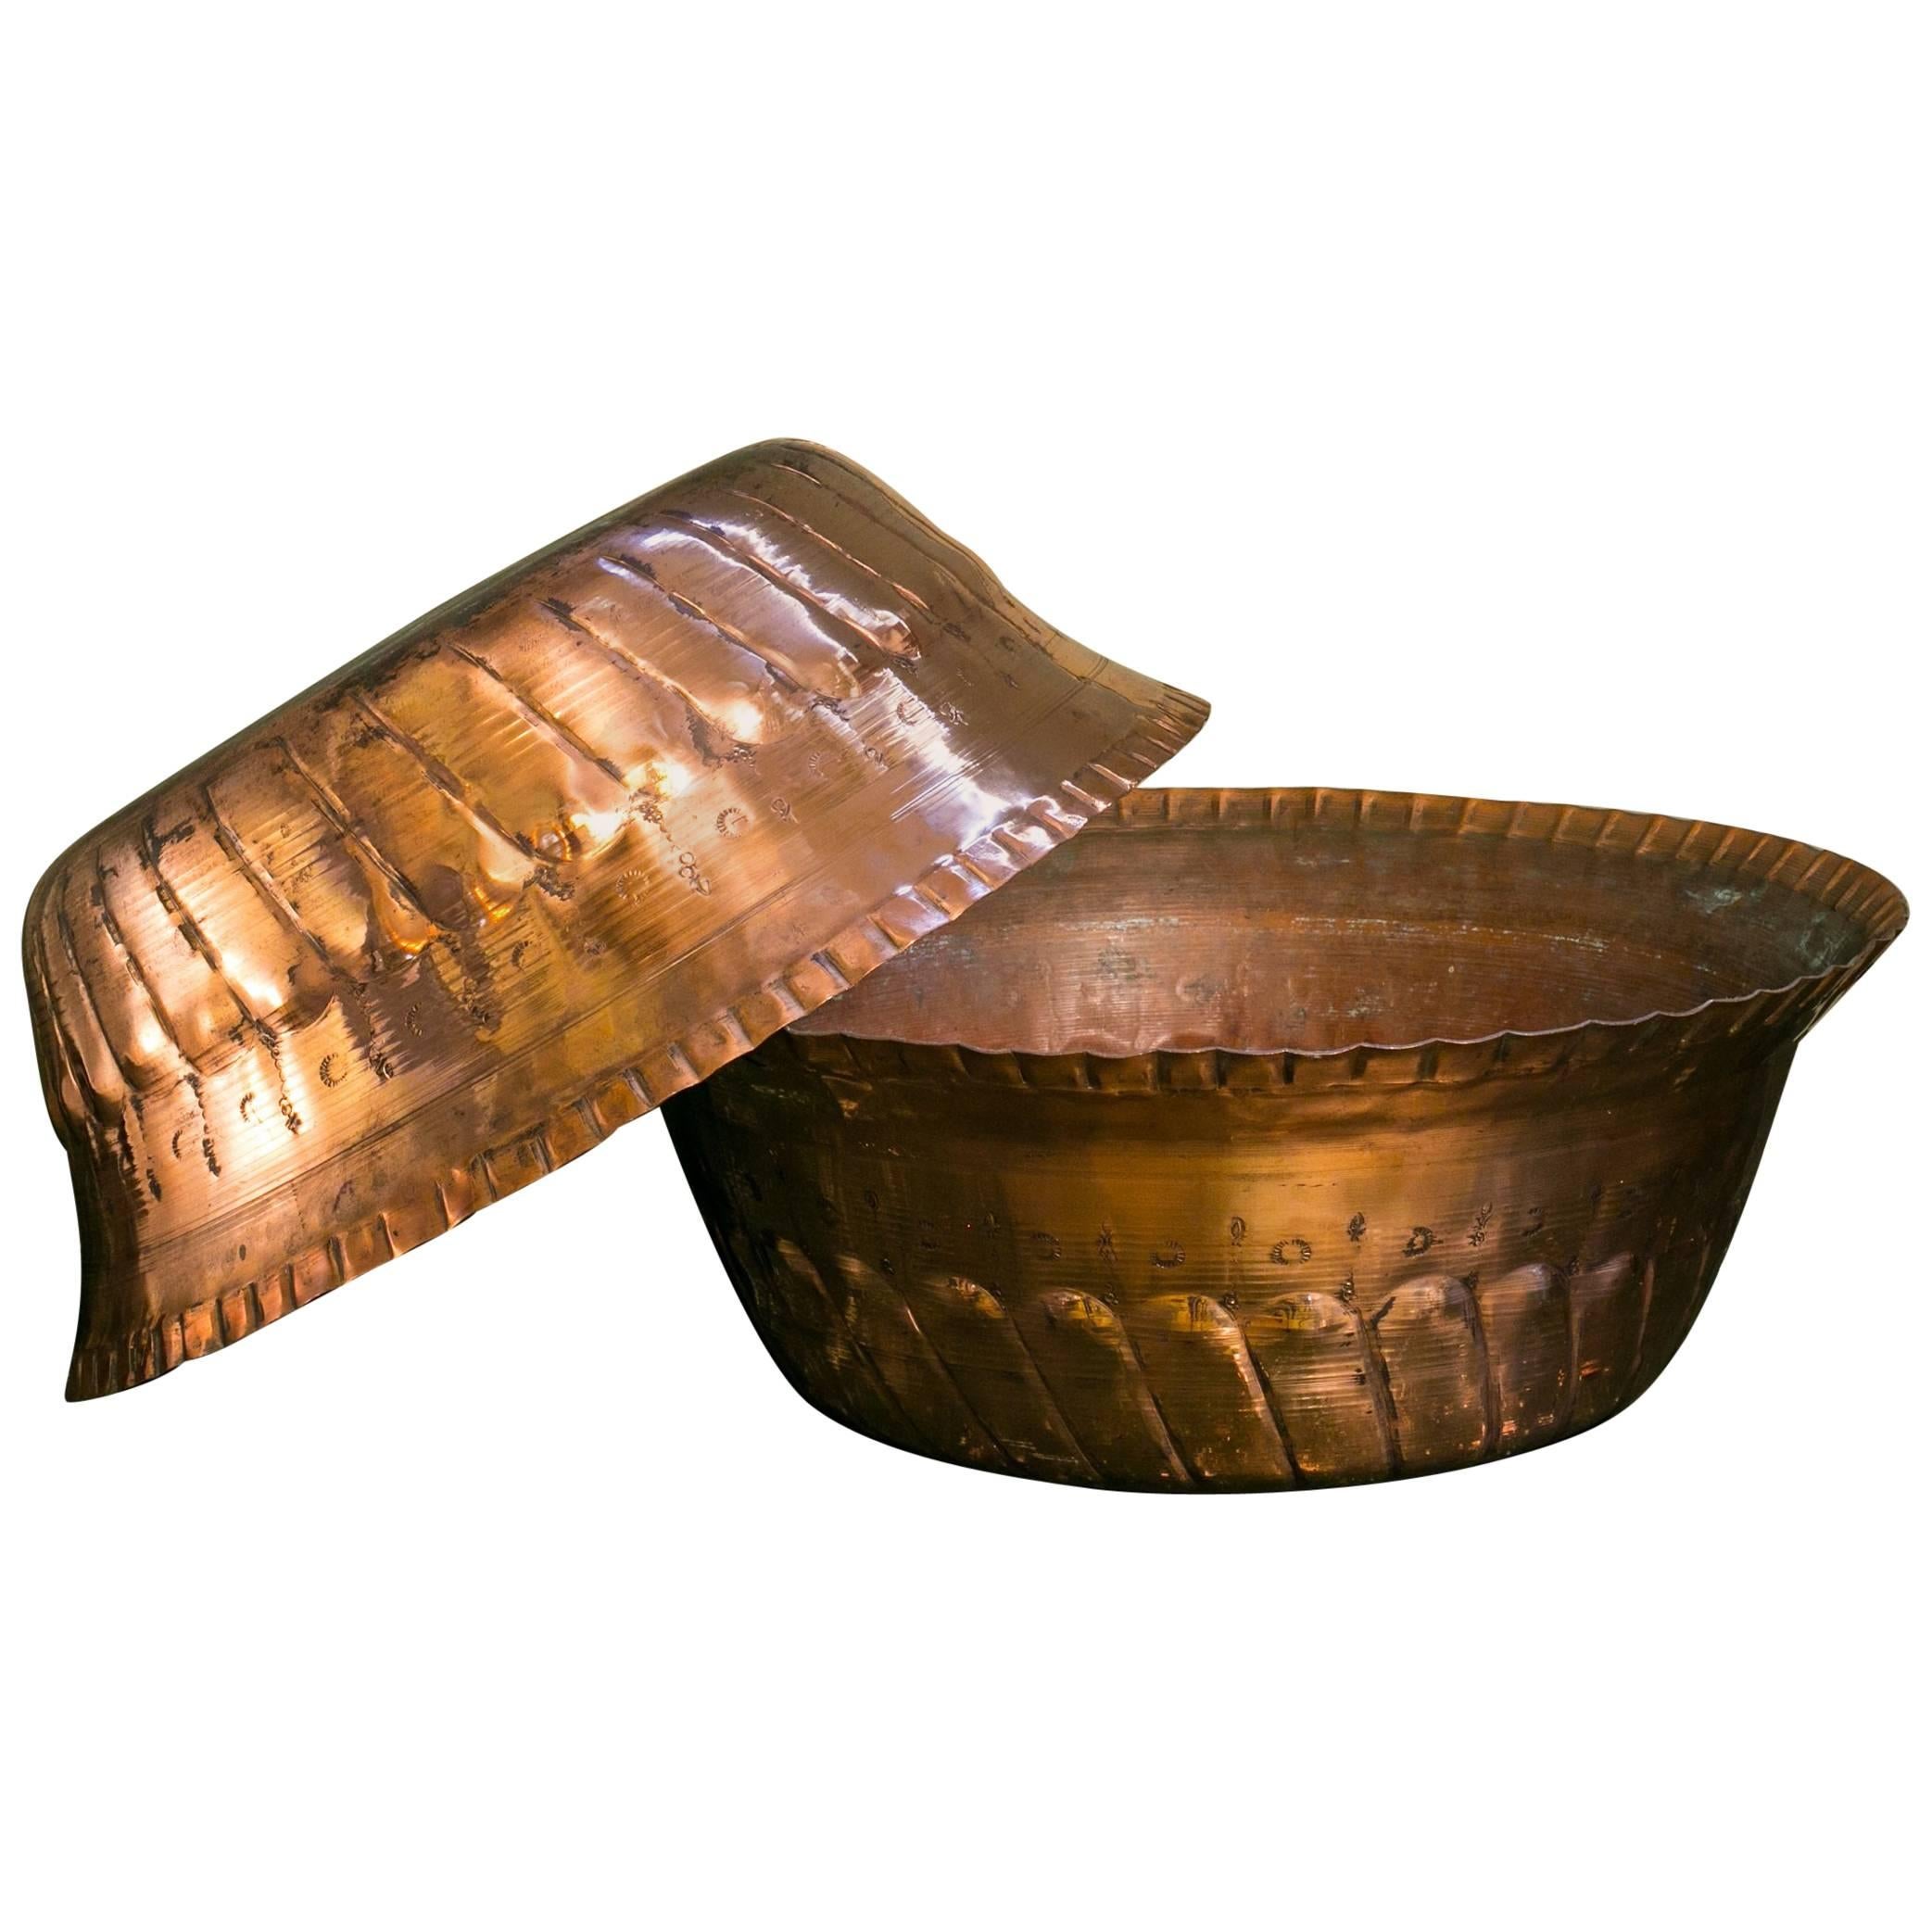 Grands bols anciens en cuivre fabriqués à la main au Maroc, vers 1900